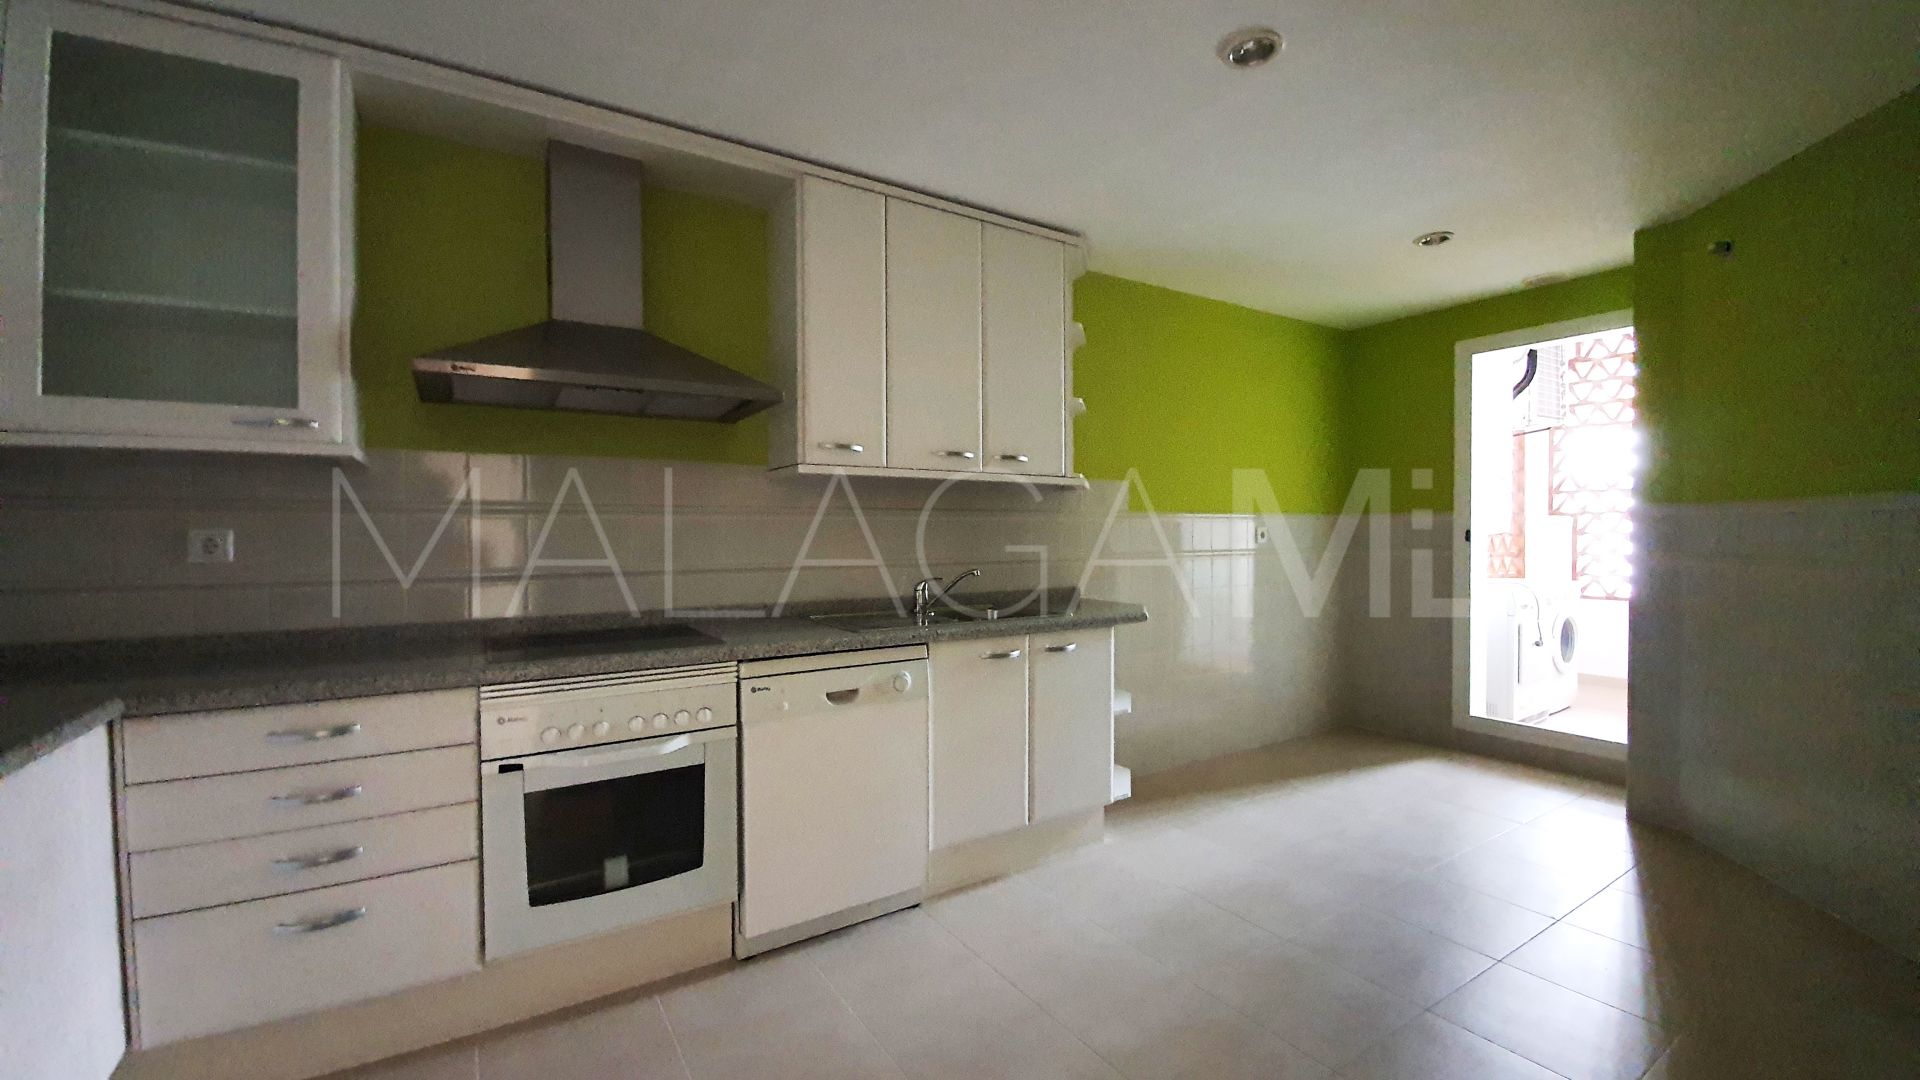 For sale apartment in Nueva Alcantara